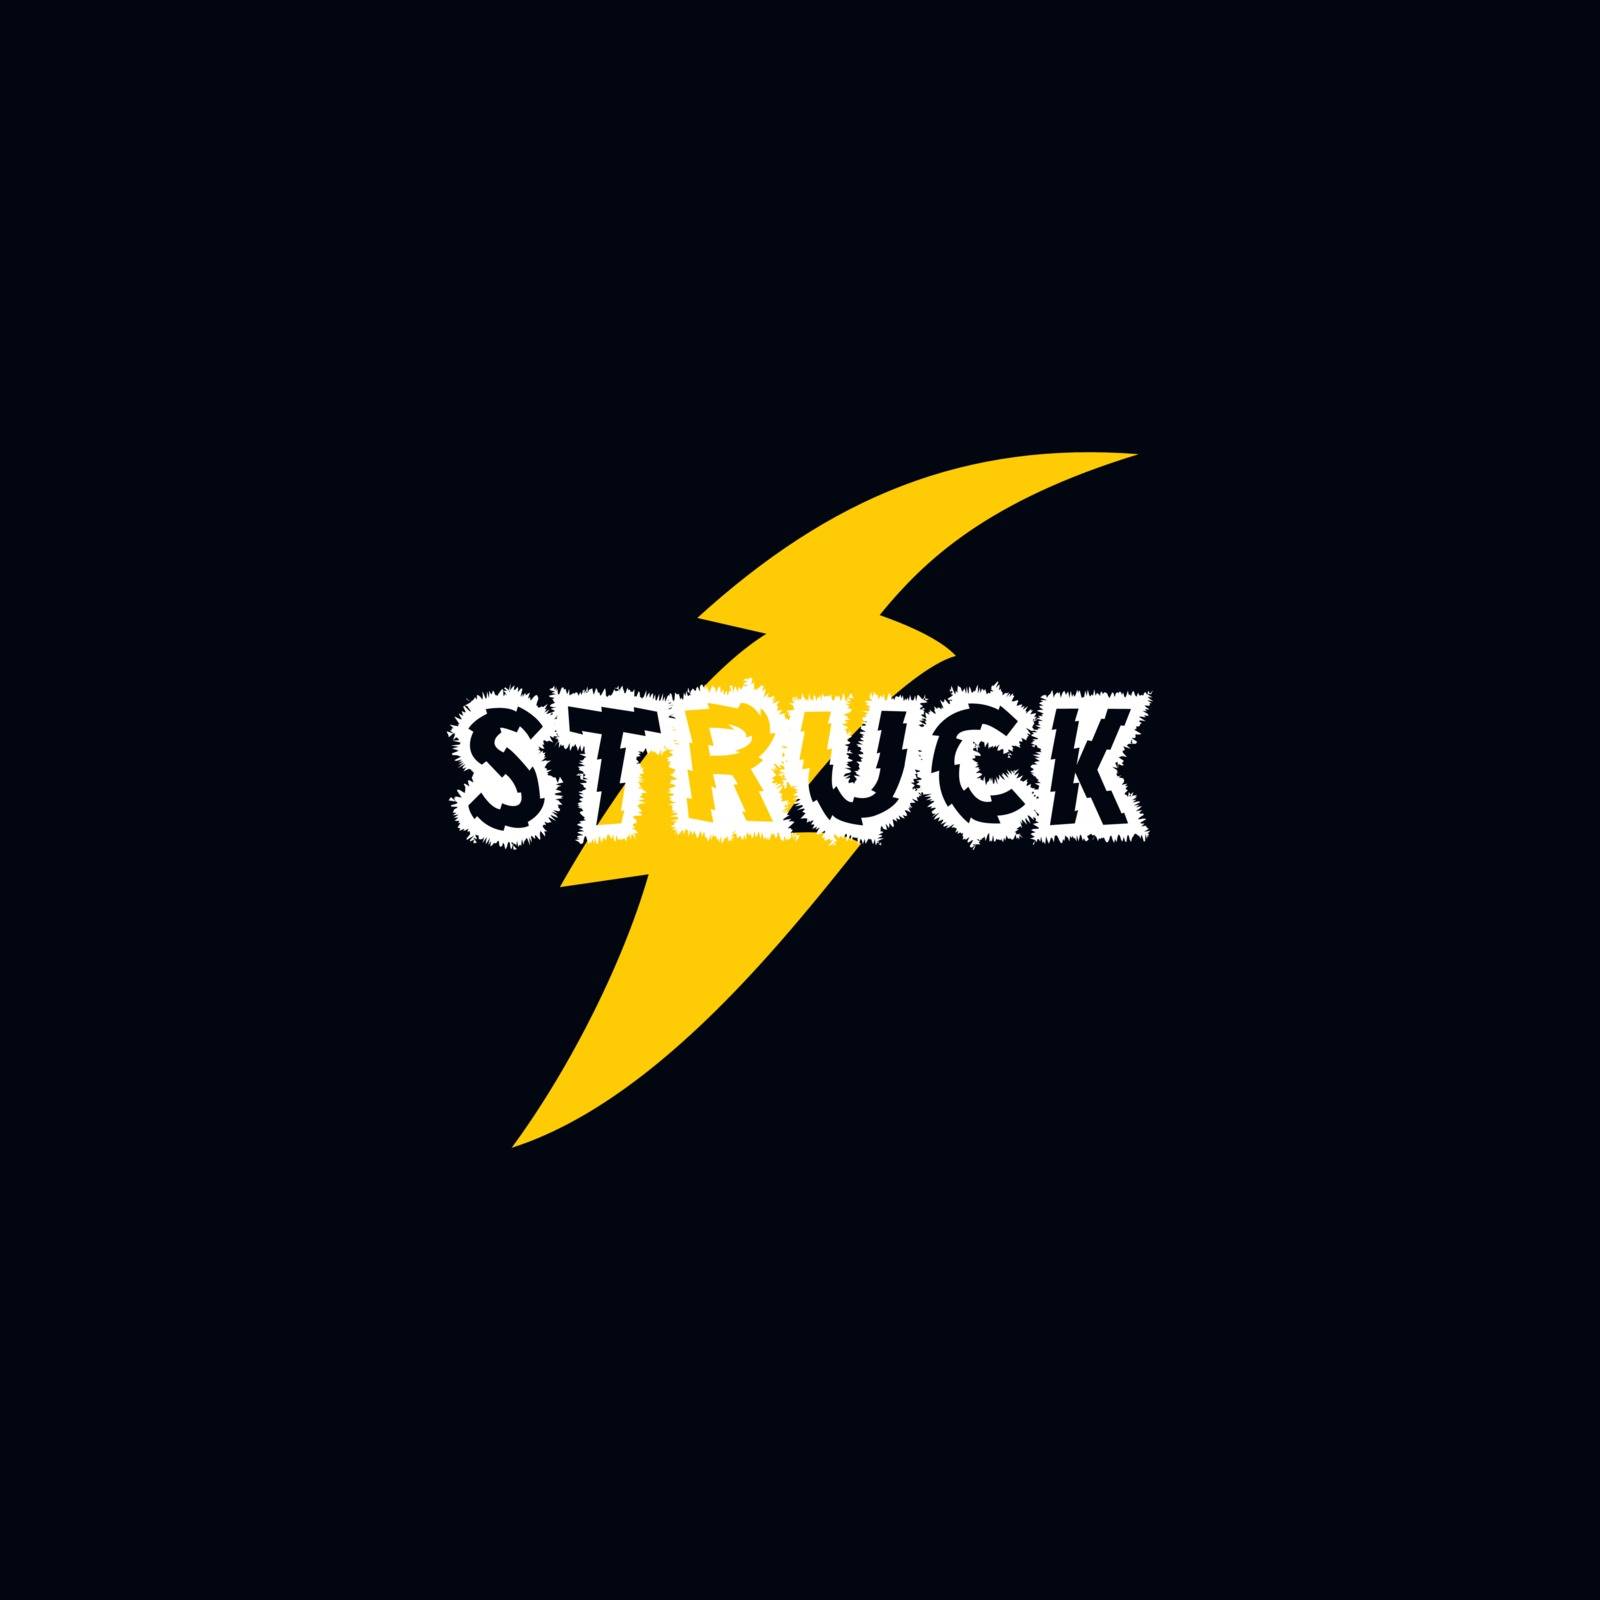 flash thunder bolt logo by vector1st